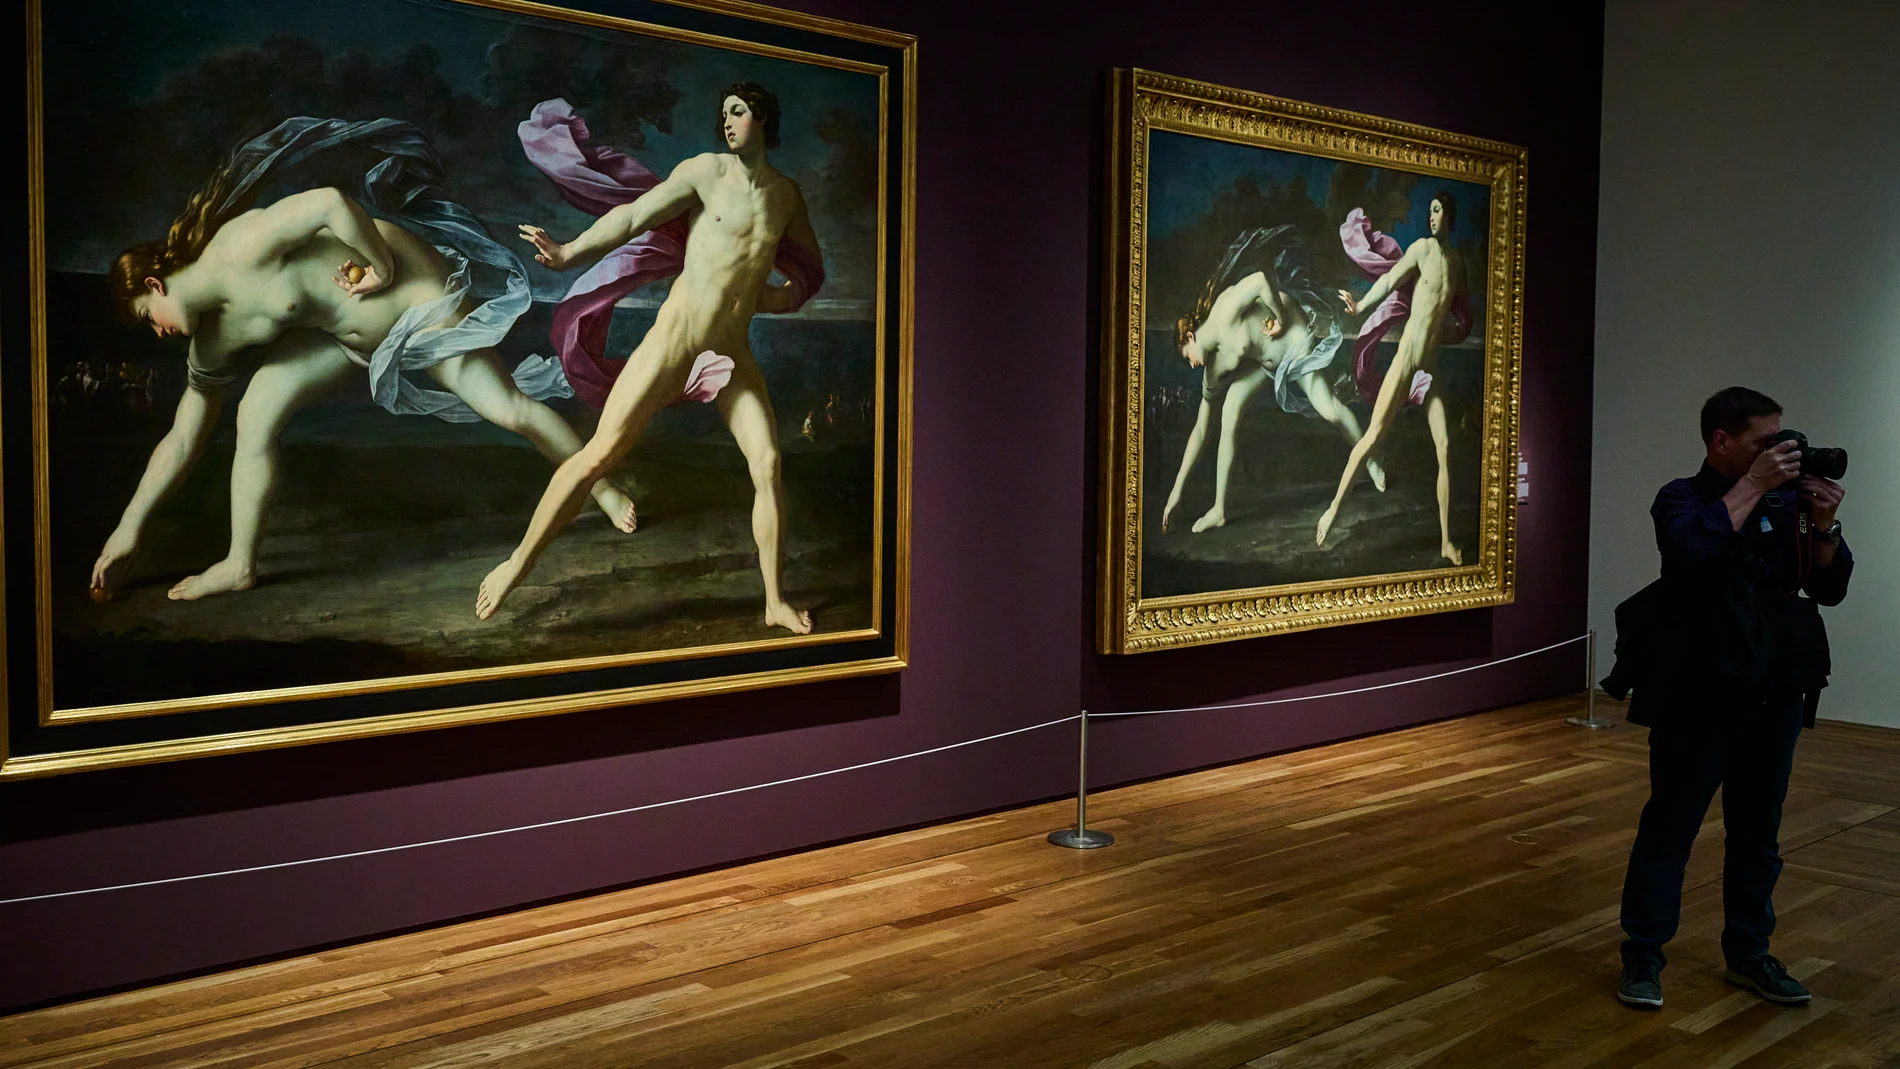 El Museo Nacional del Prado presenta la exposición antológica "Guido Reni", compuesta de casi 100 obras de instituciones y colecciones de Europa y América